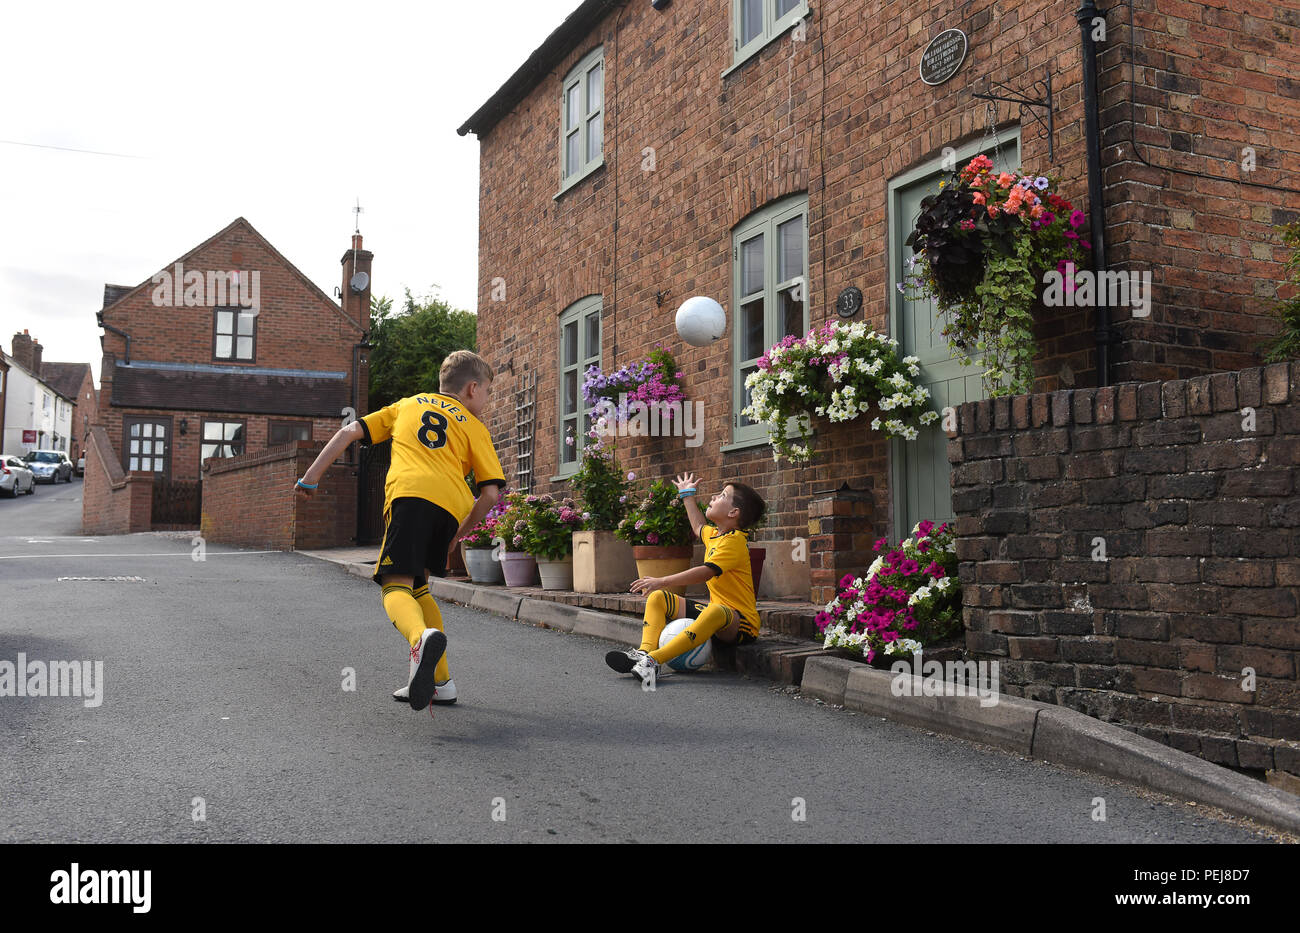 Jungen in Wolverhampton Wanderers FC Replik kits Fußball spielen außerhalb der Geburtsort von Wölfen und England Fußball-Legende Billy Wright in Ironb Stockfoto